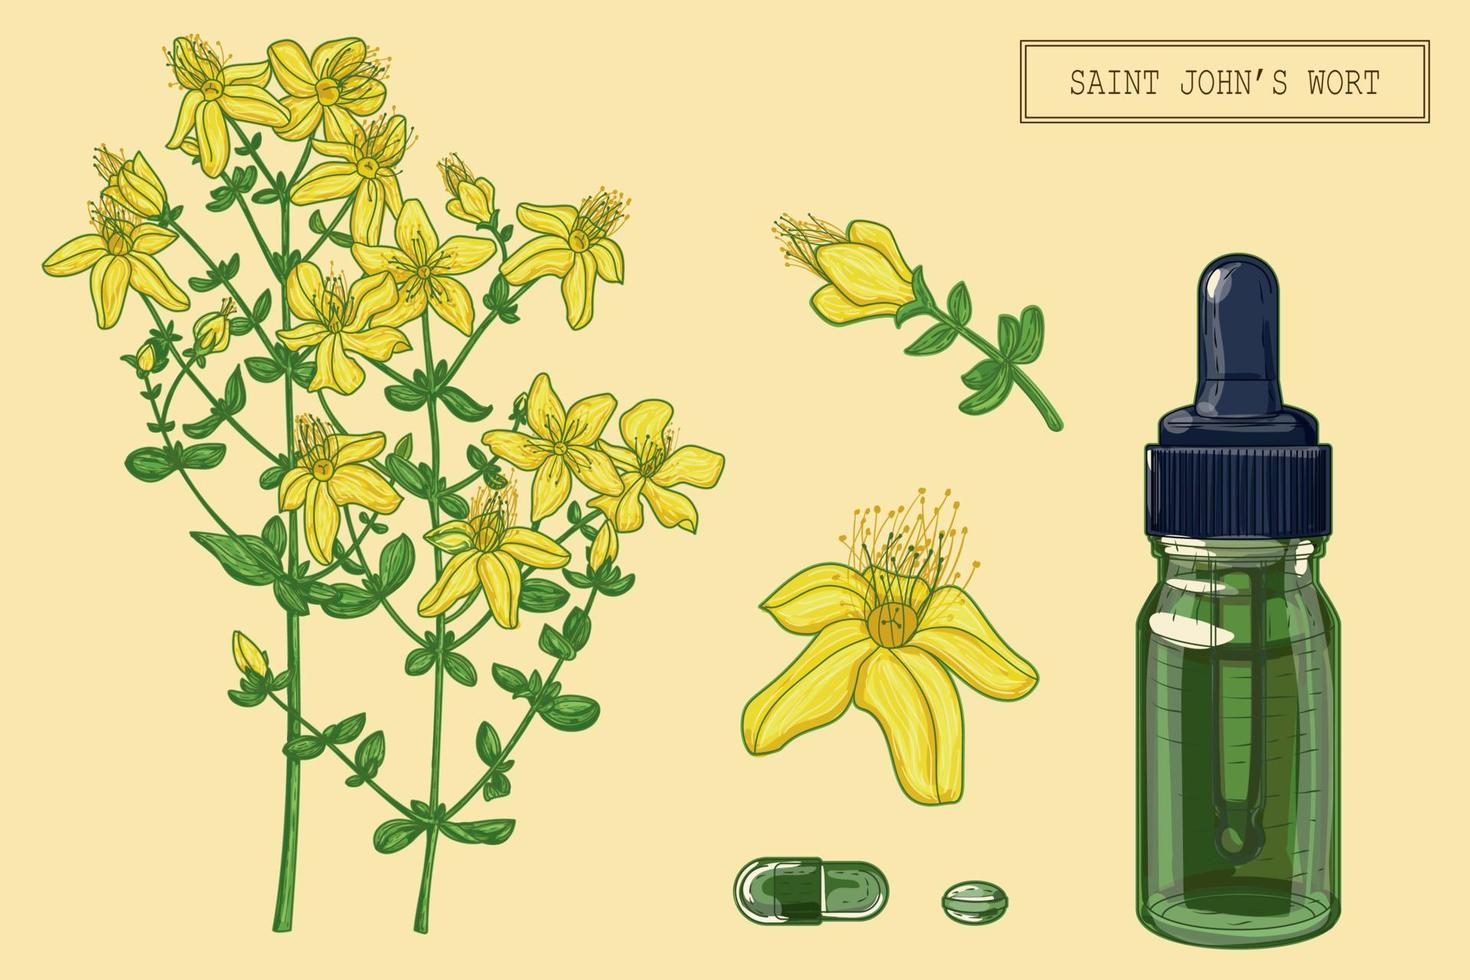 pianta e contagocce di erba medica di san giovanni, illustrazione botanica disegnata a mano in uno stile moderno alla moda vettore